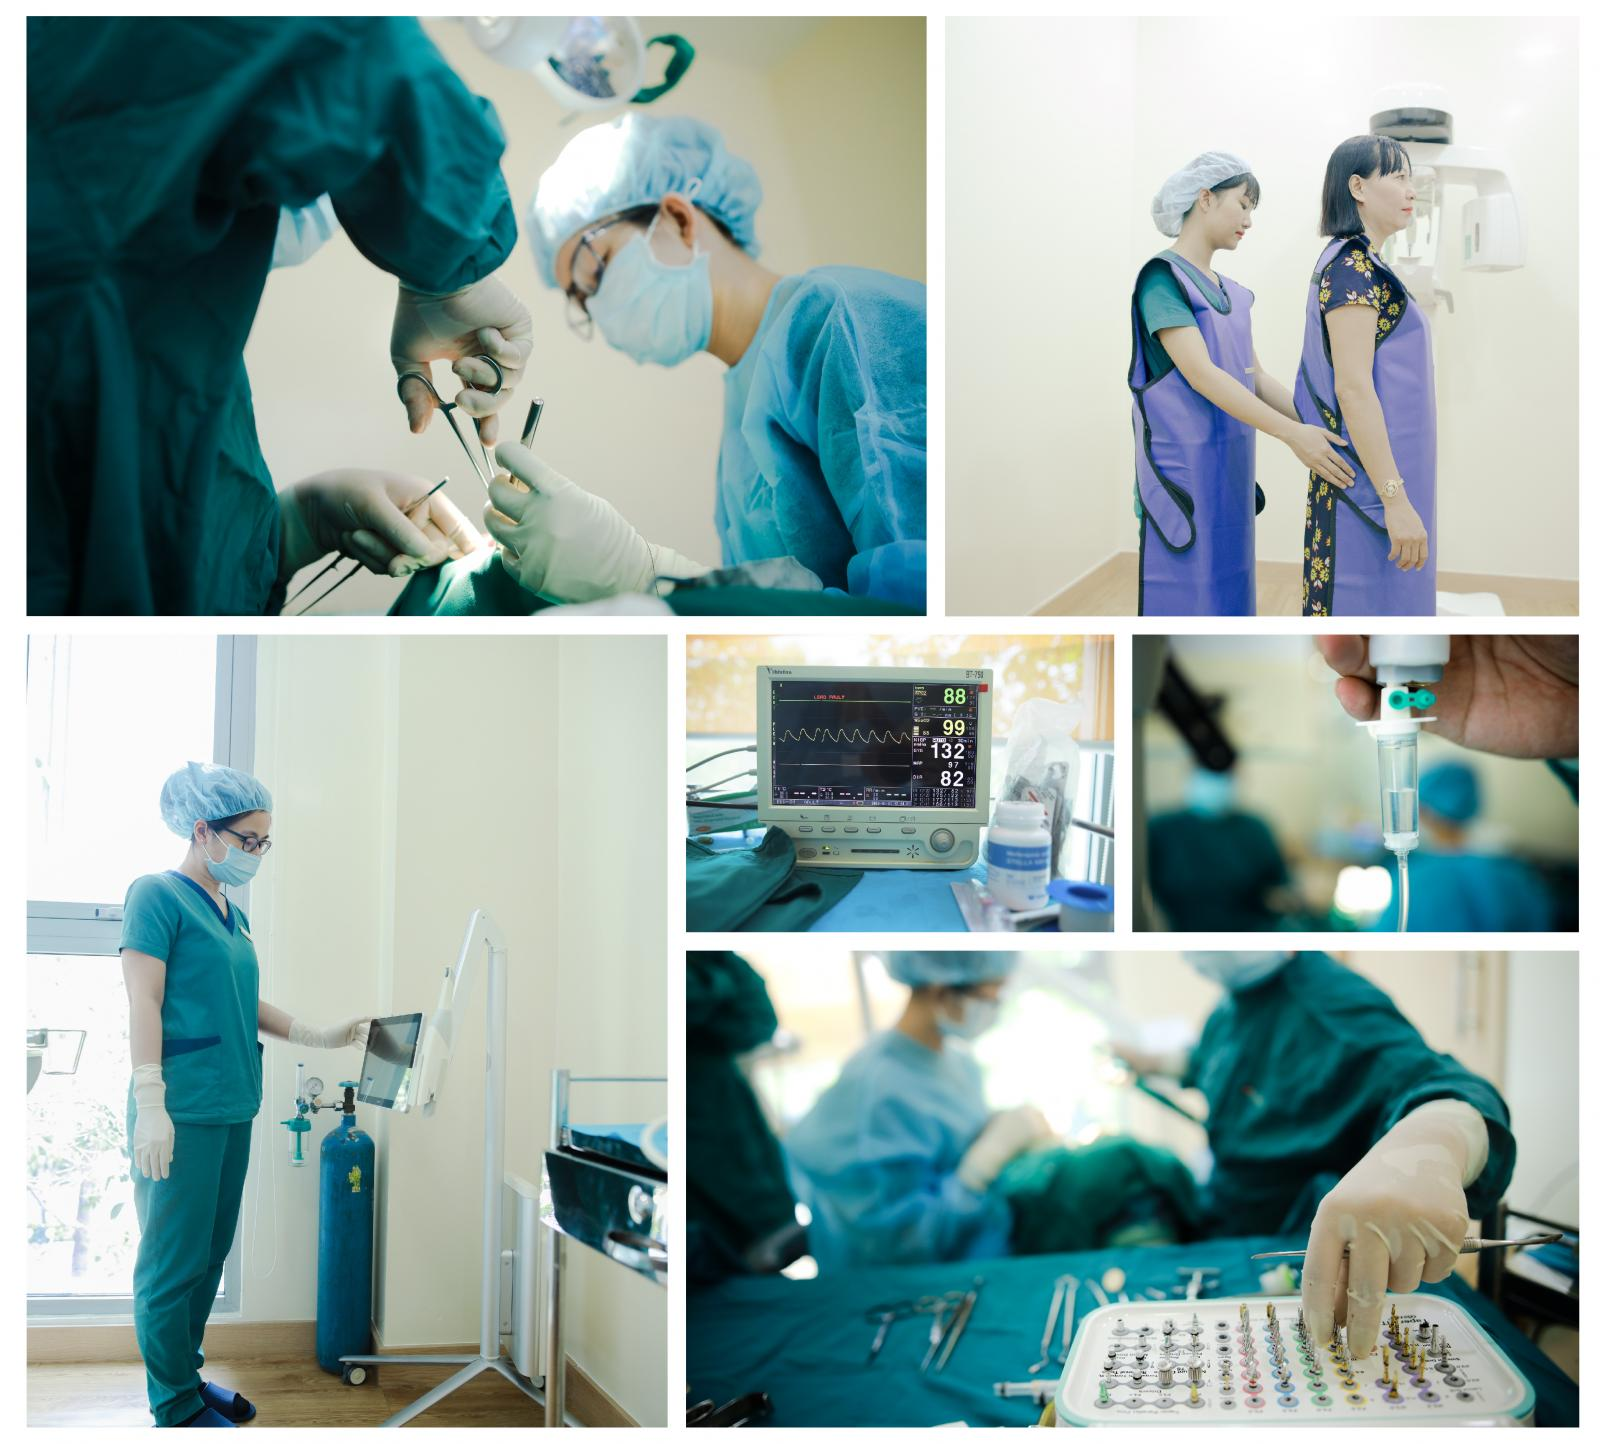 Dr. Care - Nha khoa chuyên sâu trồng Implant uy tín tại TP. HCM